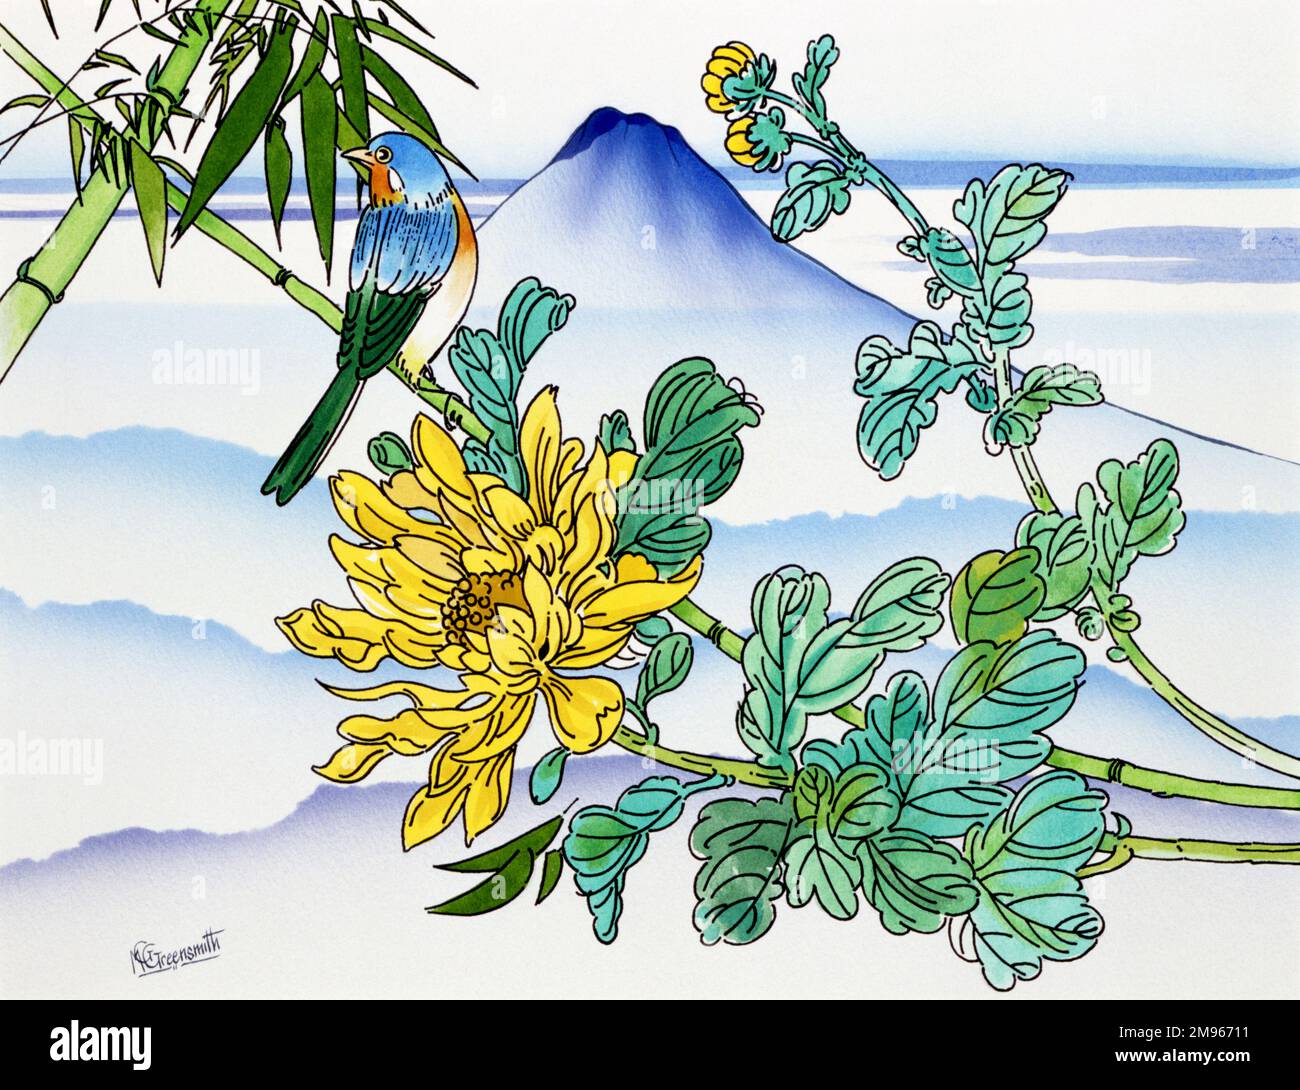 Un songbird coloré perché au milieu des fleurs de bambou dans ce fantastique paysage japonais peint par Malcolm Greensmith. Le pic distinctif du Mont Fuji domine l'horizon. Banque D'Images